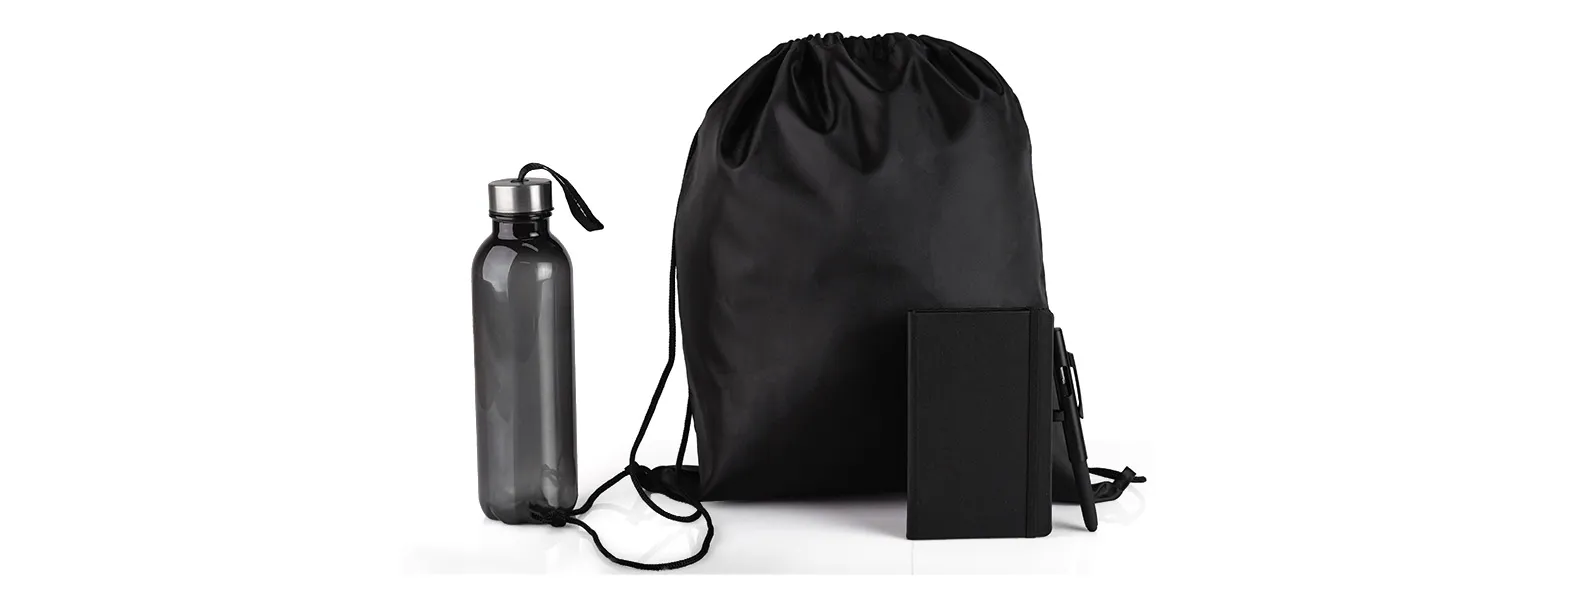 Kit boas vindas. Conta com mochila preta em nylon 420; garrafa preta em PET; caderno para anotações preto com capa dura e caneta esferográfica em ABS preta.